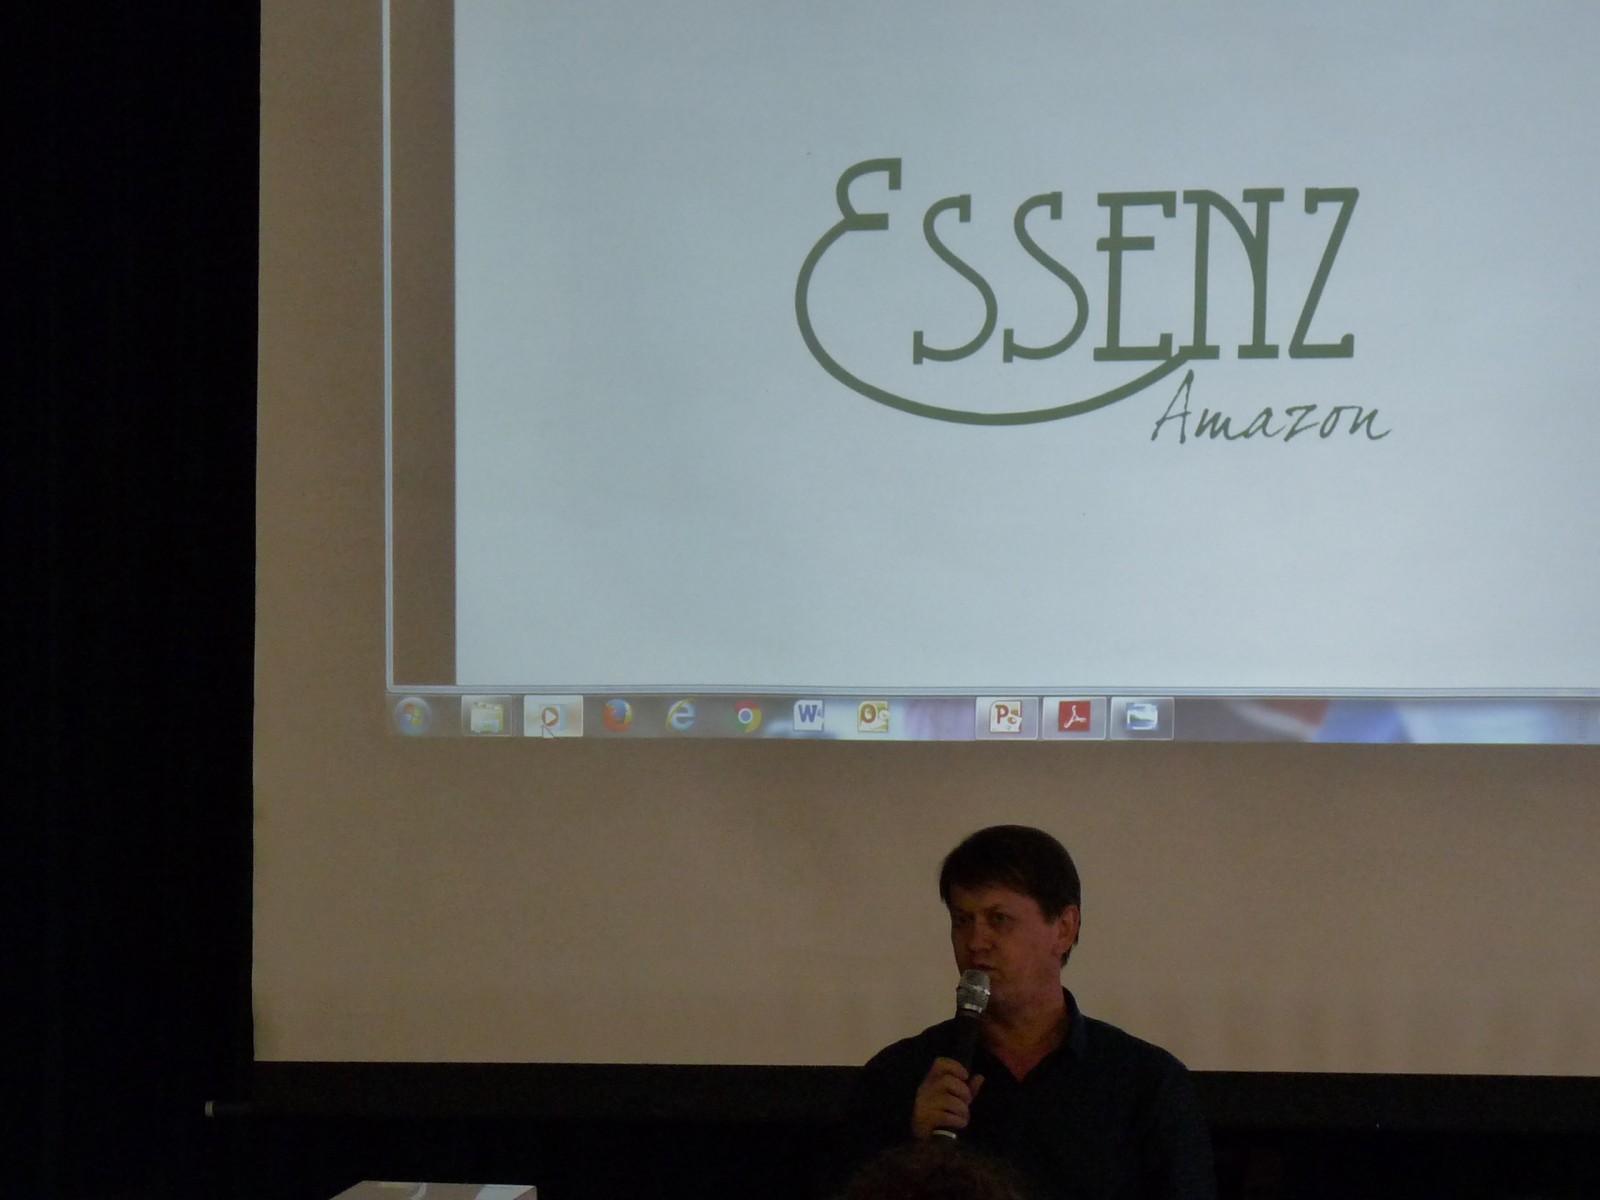 Mario Schwaab, der Gründer und Inhaber der Fa. ESSENZ Amazon mit der Marke "Sementes", stellte die Produktionsweise seiner Firma zur Herstellung hochwertigster Körperpflegeprodukte vor, unterstützt von einem kleinen Film. 